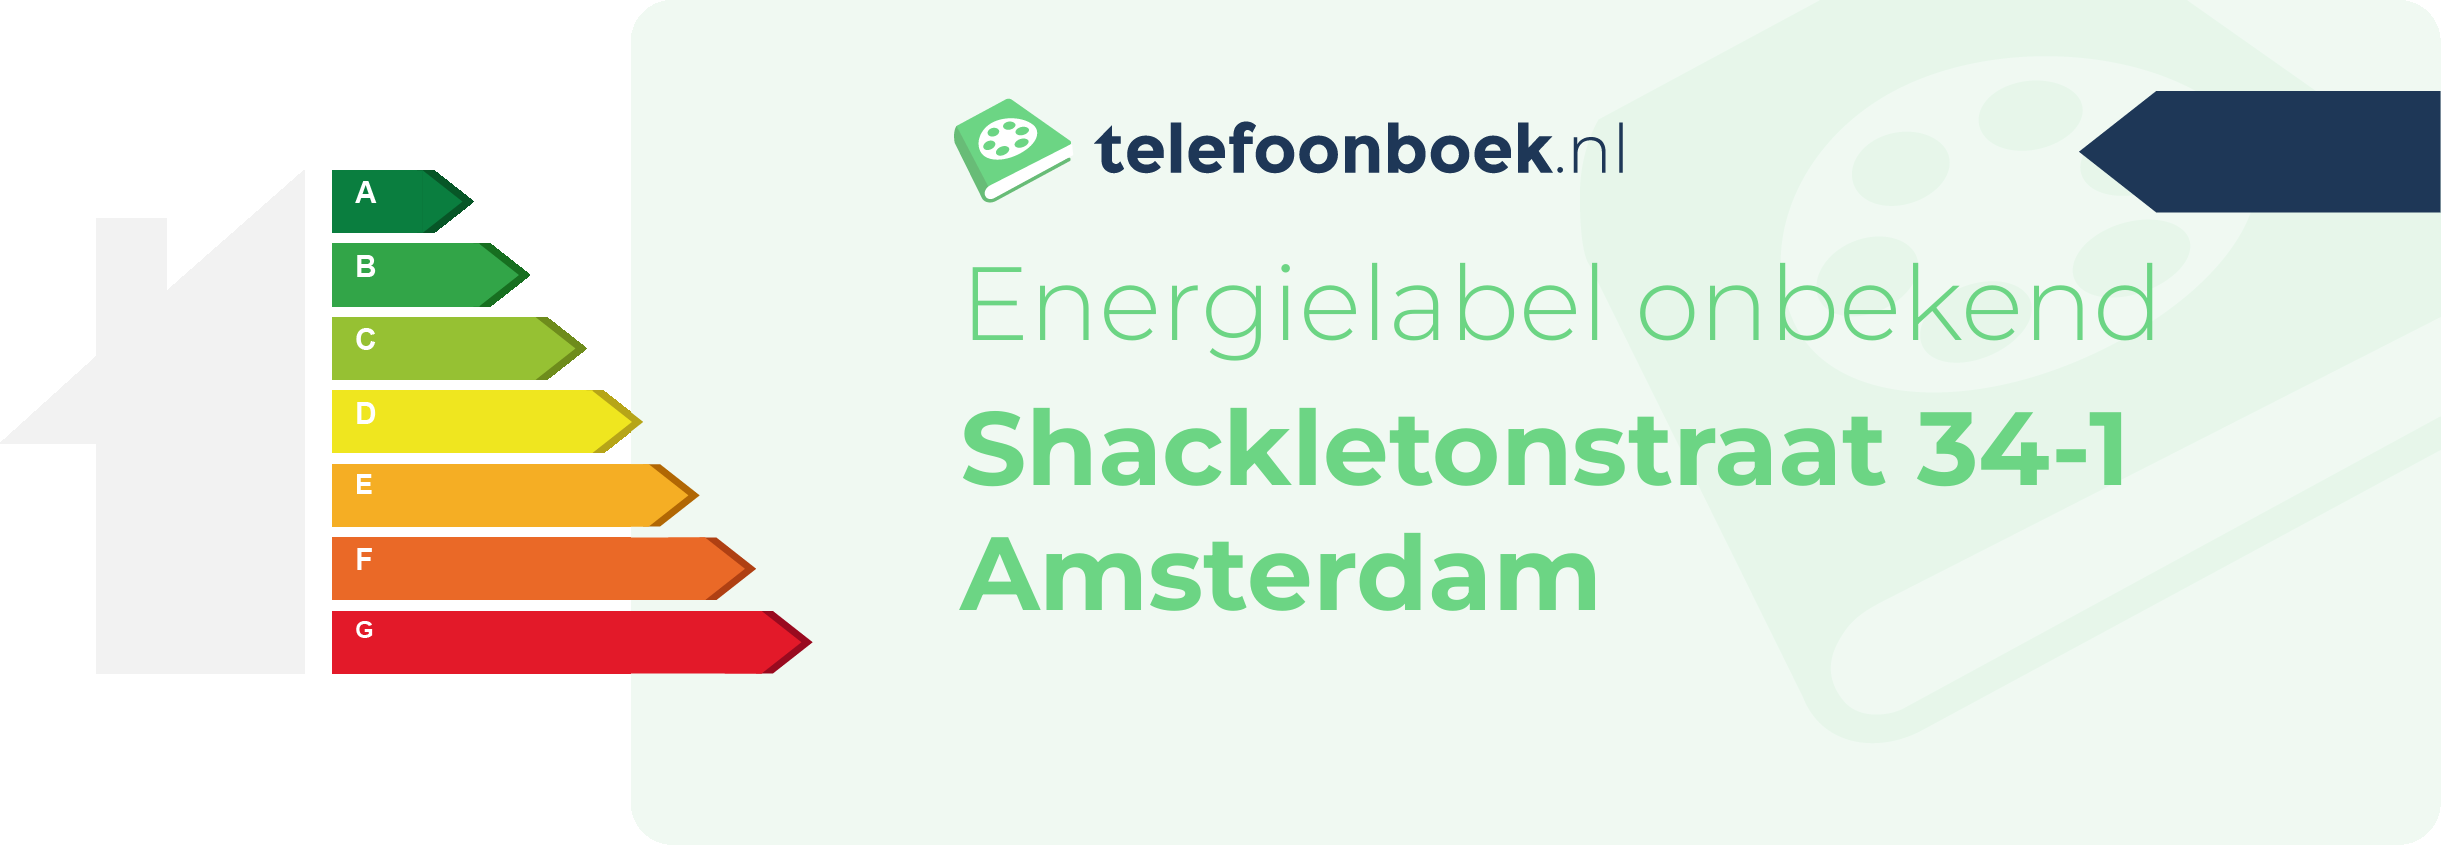 Energielabel Shackletonstraat 34-1 Amsterdam